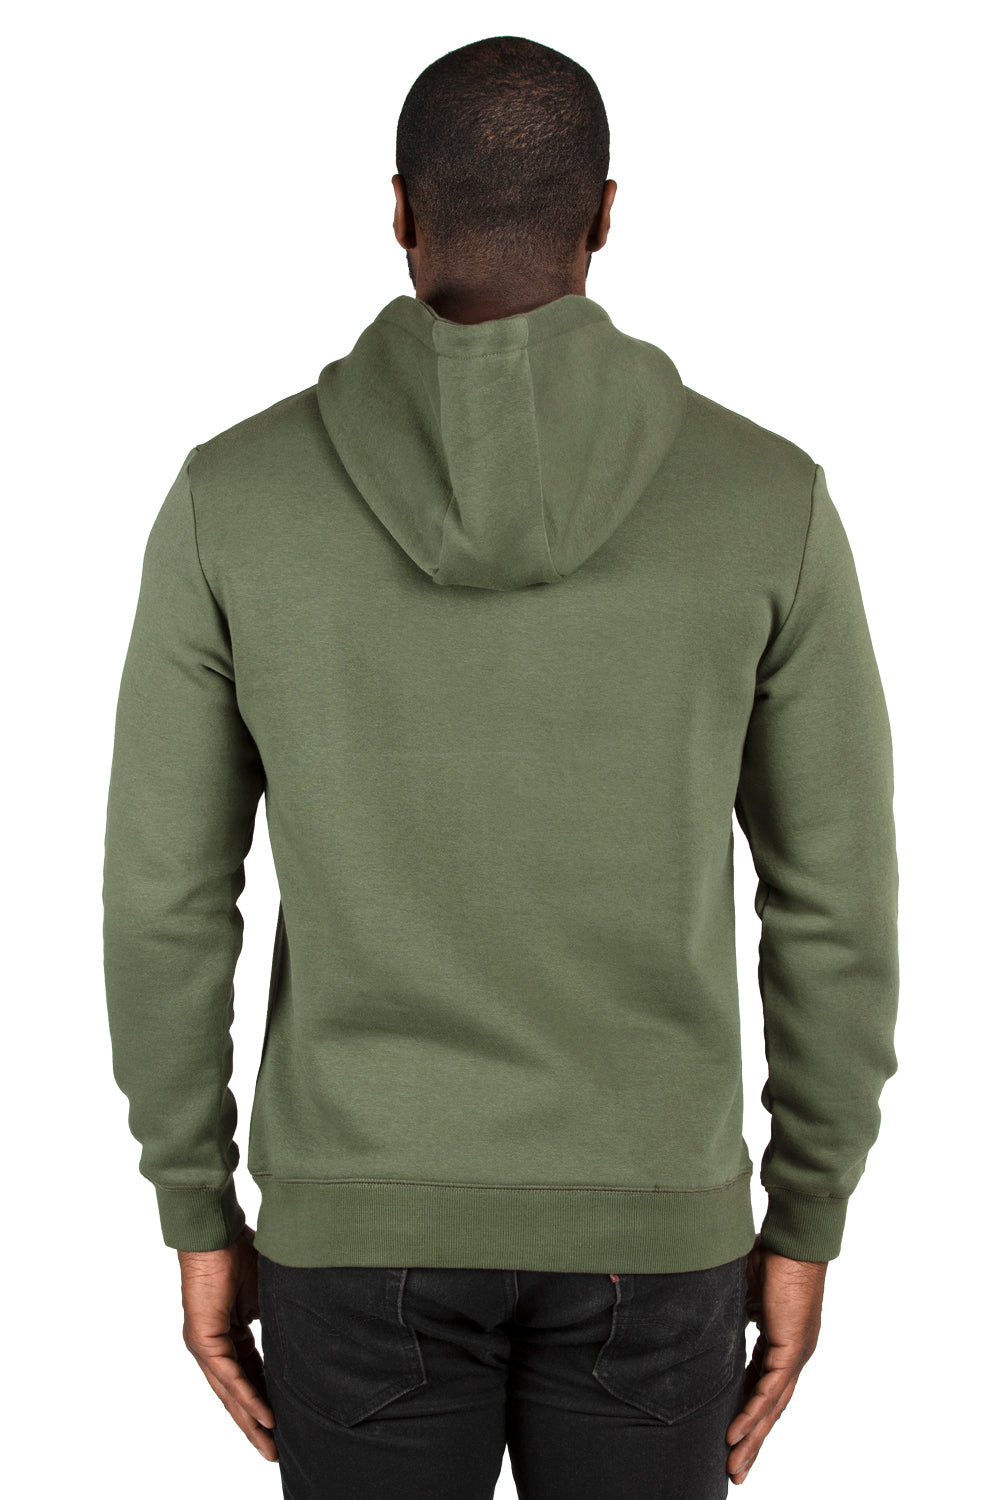 Threadfast Apparel 320H Mens Ultimate Fleece Hooded Sweatshirt Hoodie Army Green Back